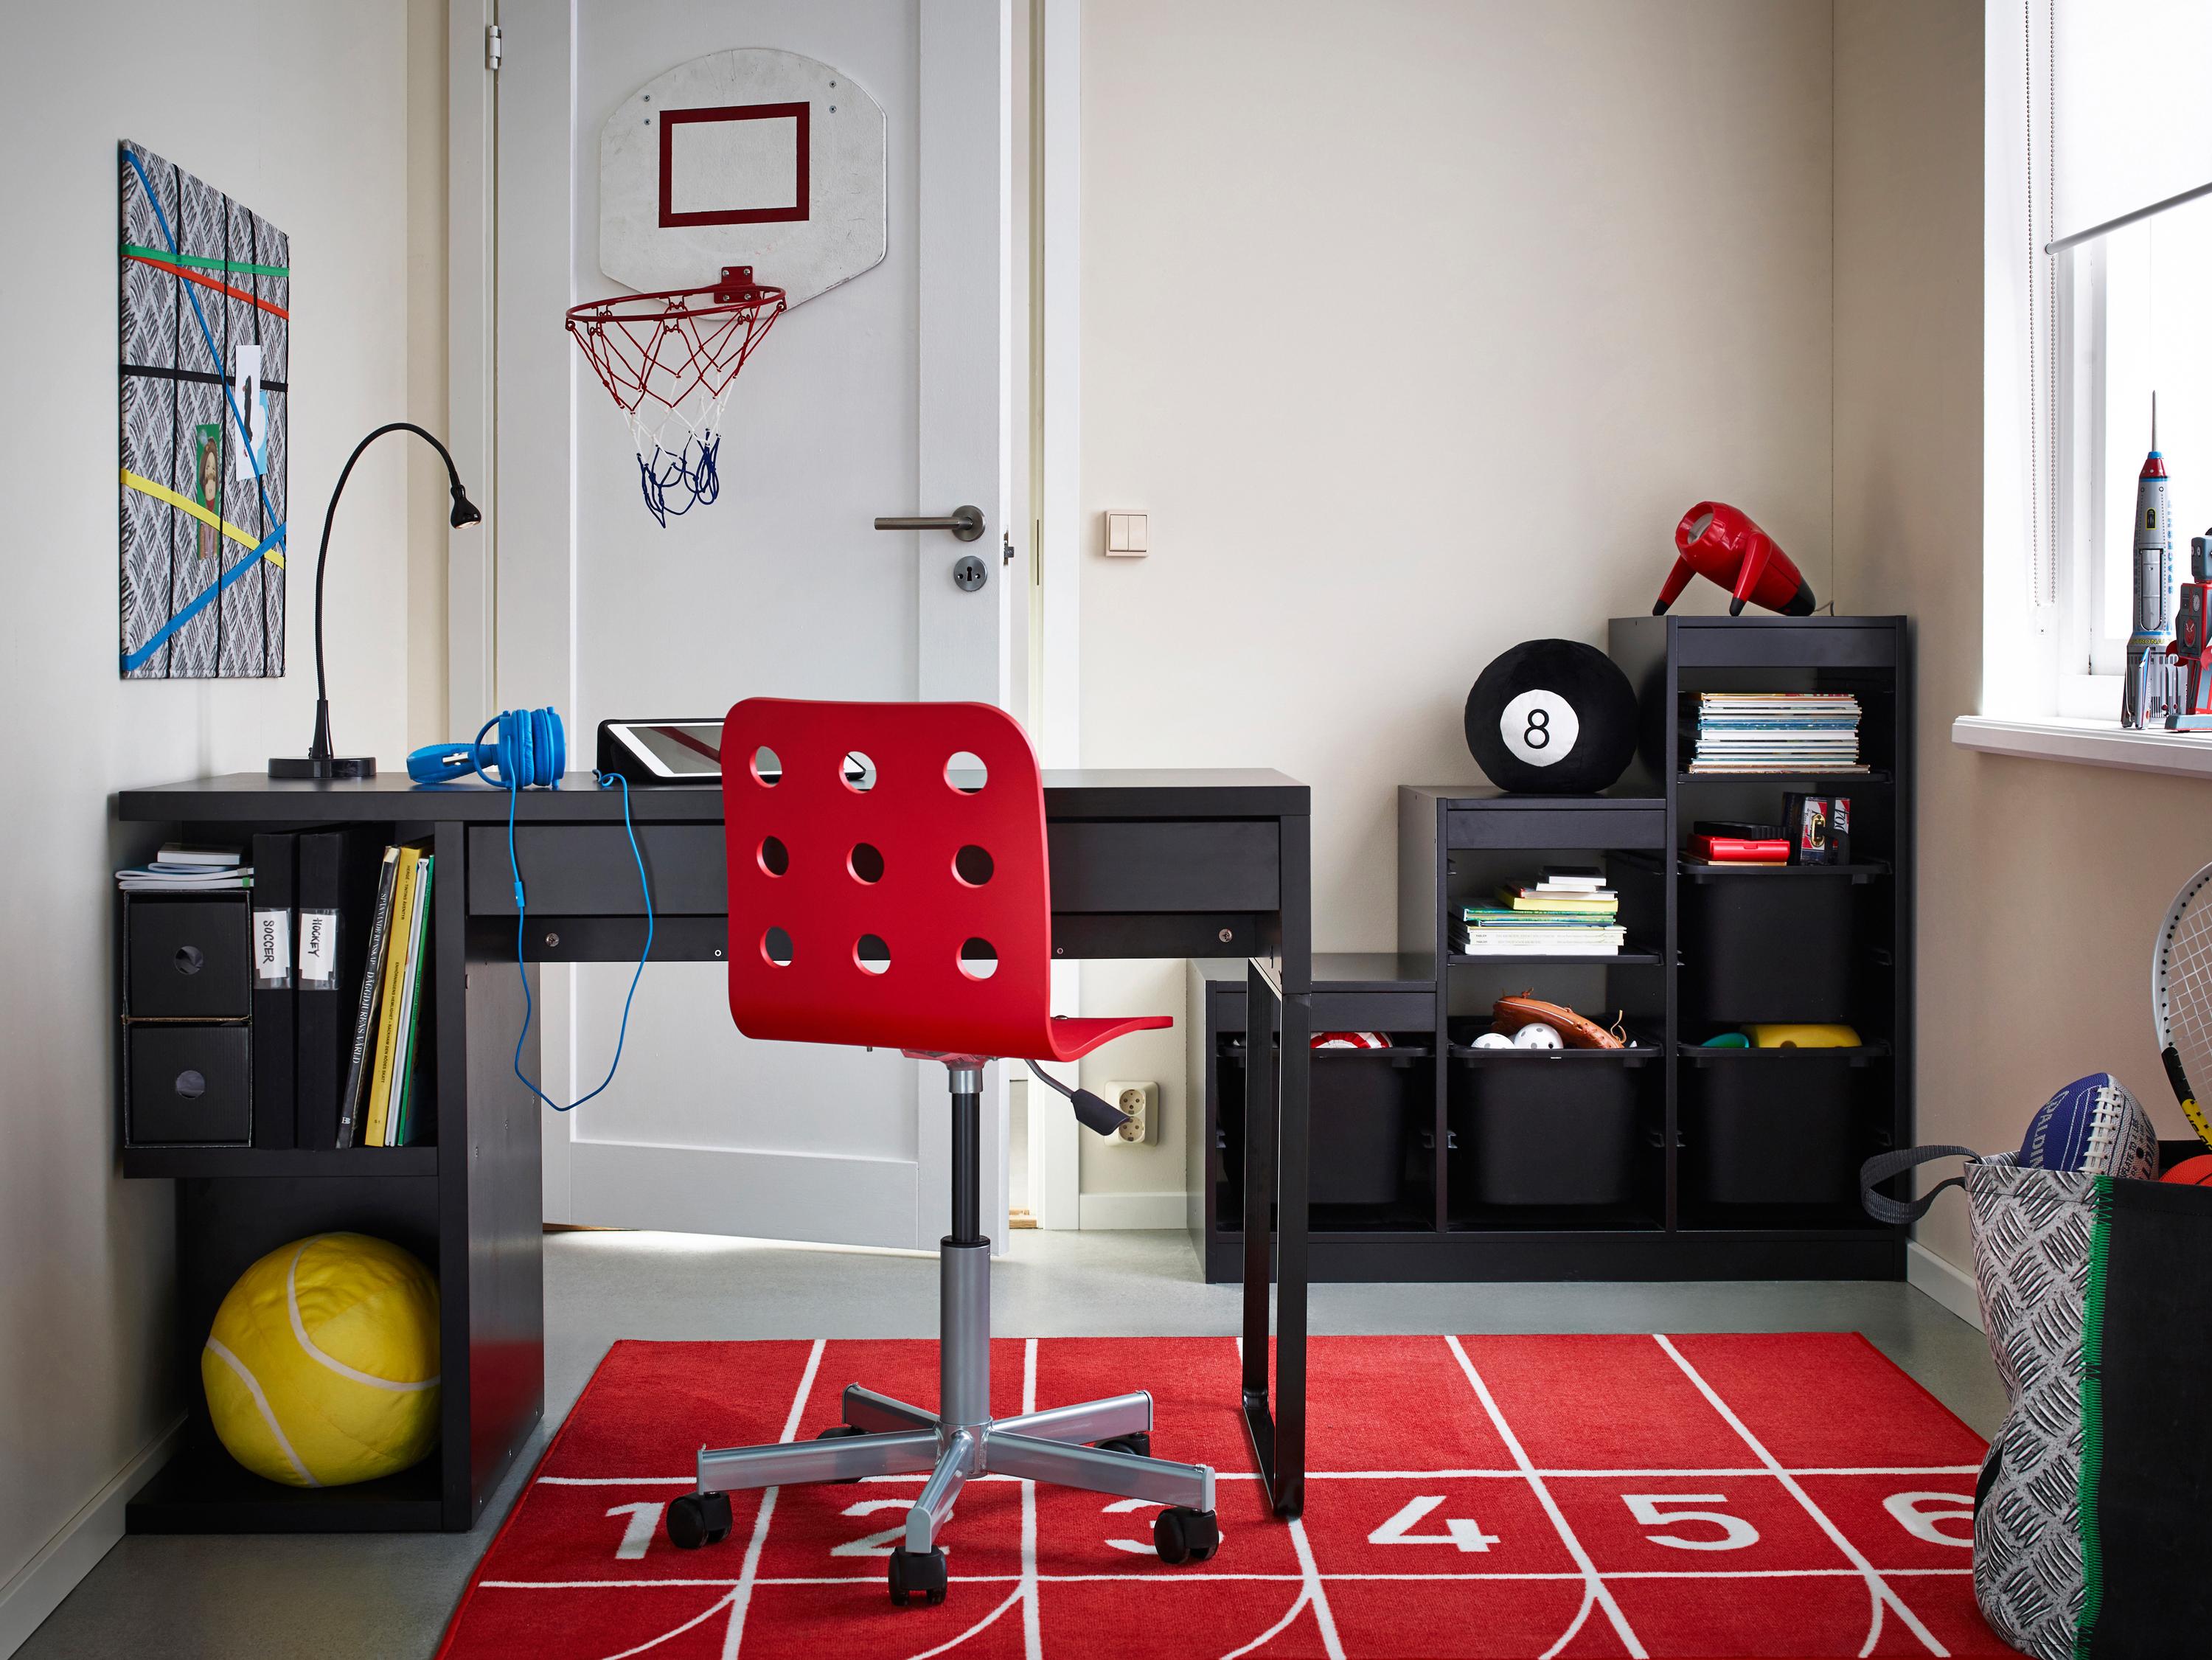 Basketballkorb im sportlichen Jugendzimmer #schreibtisch #teppich #jugendzimmer #schwarzerschreibtisch #kinderschrank ©Inter Ikea Systems B.V.